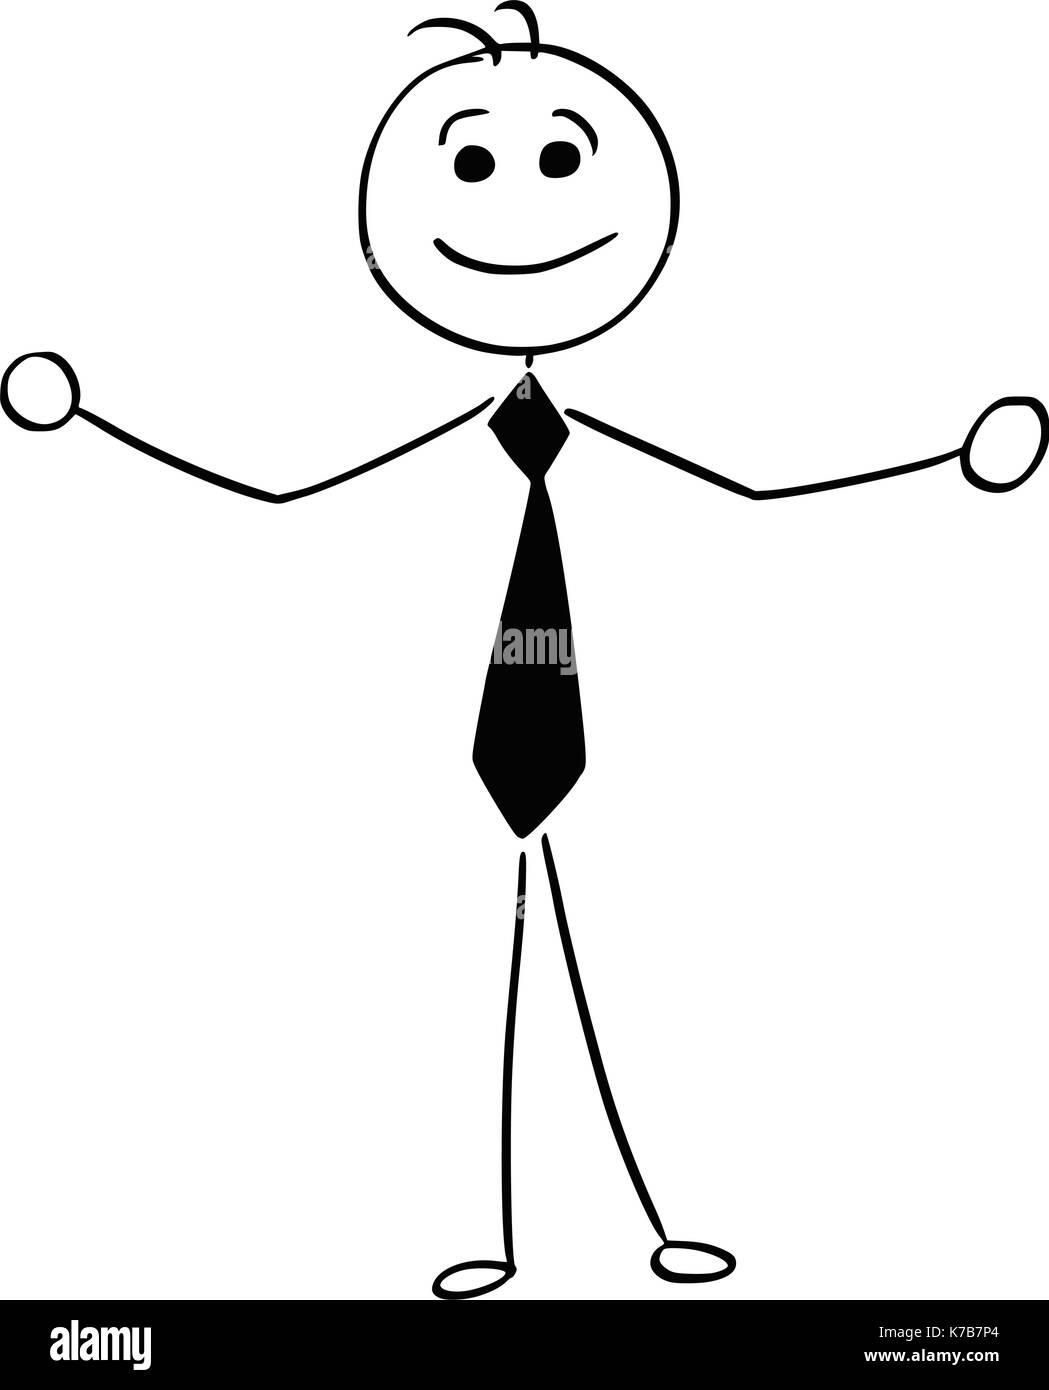 Cartoon stick Mann Abbildung von lächelnden Business mann Geschäftsmann mit offenen Armen willkommen zu heißen. Stock Vektor